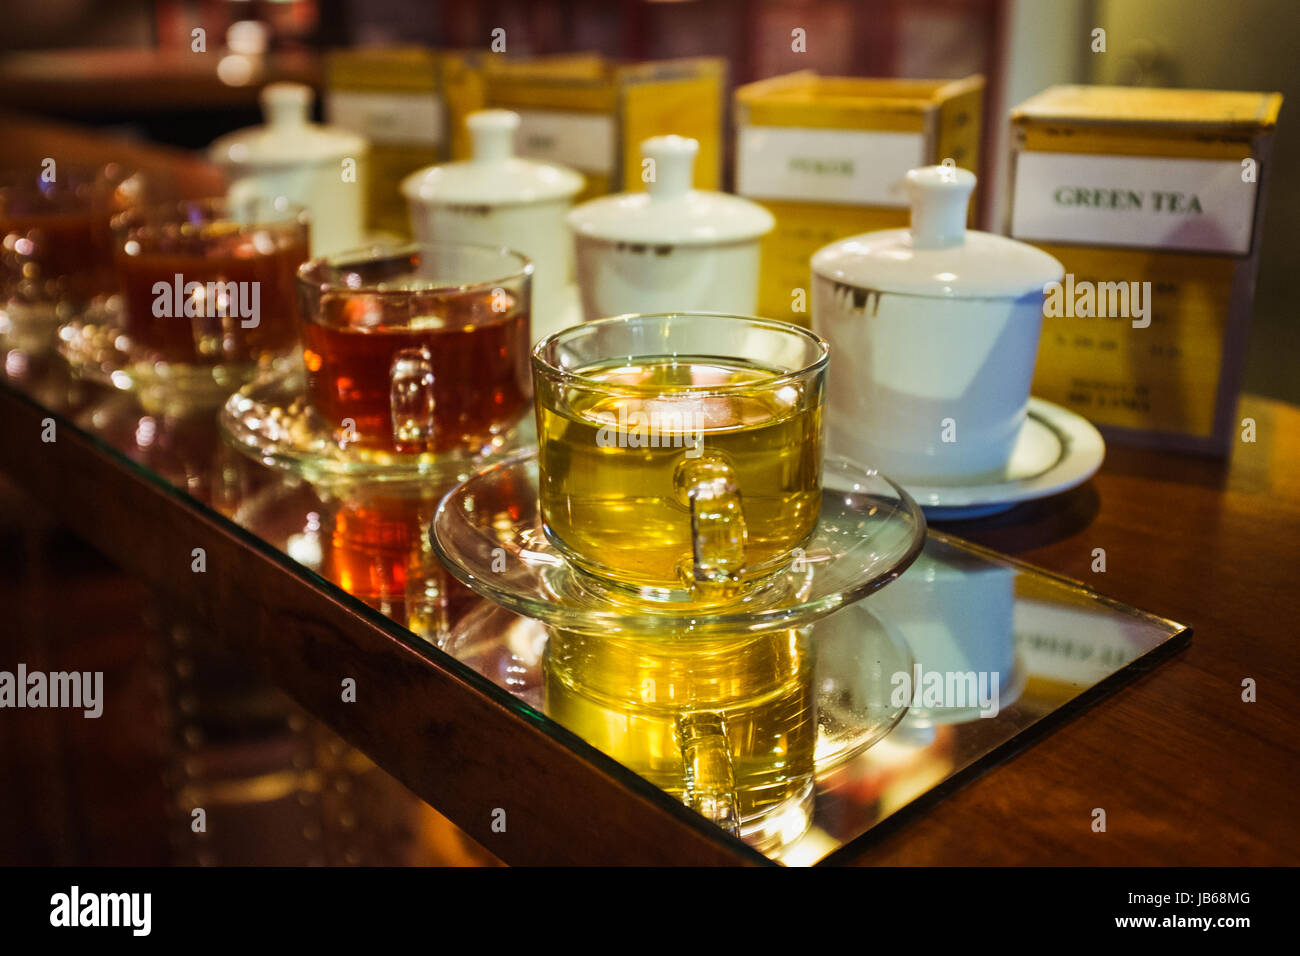 Varieties of tea on display Stock Photo